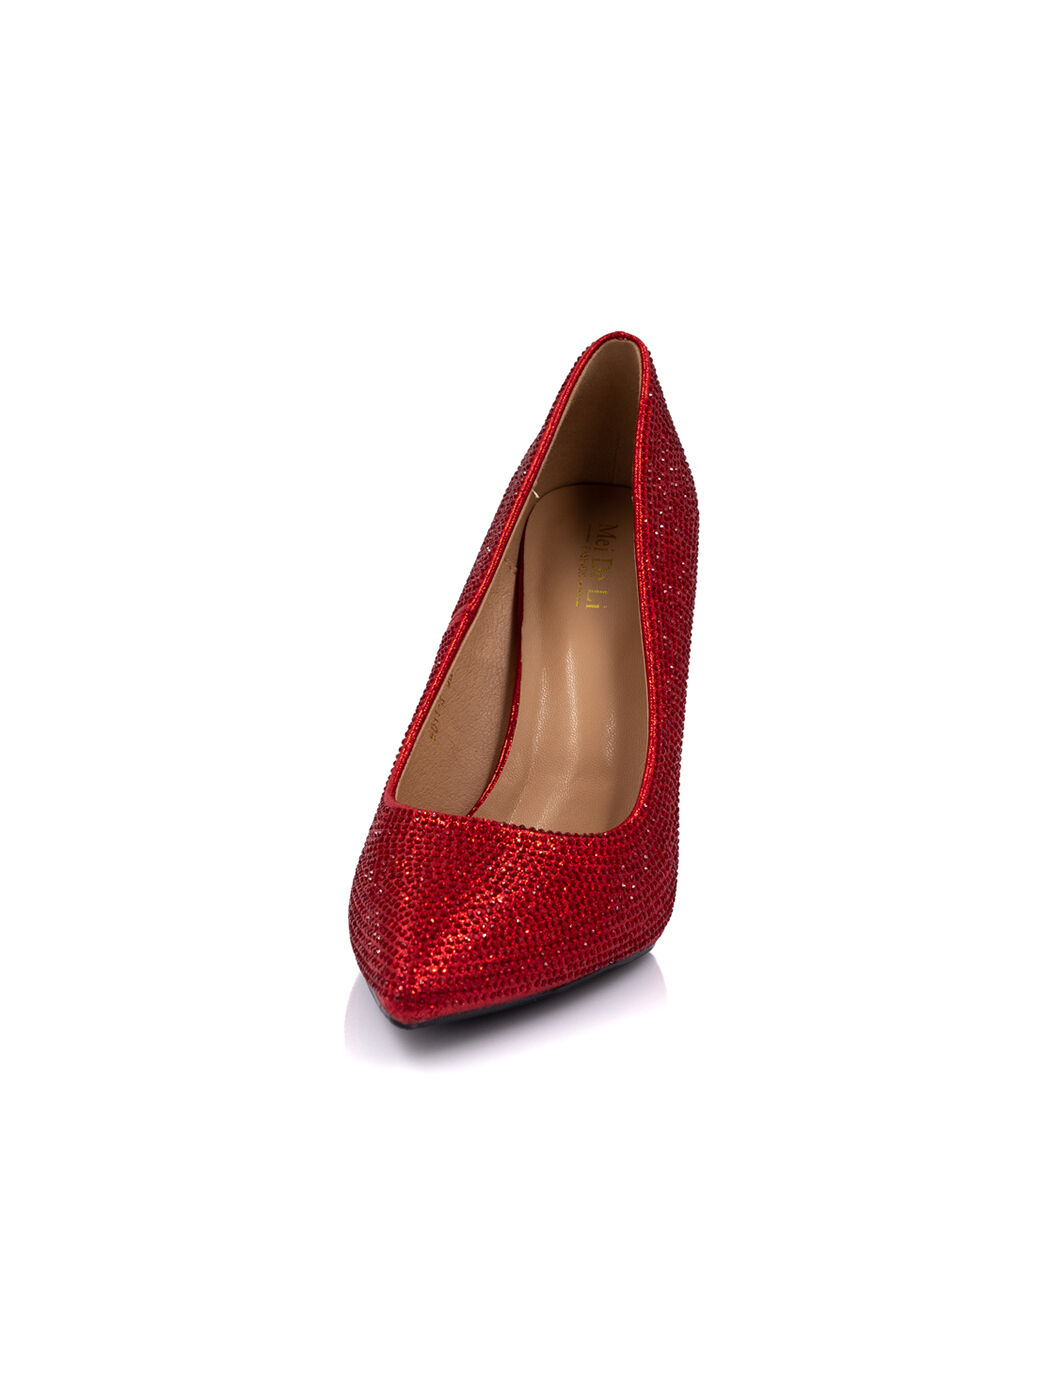 Туфли женские красные экокожа каблук шпилька демисезон 3M вид 3